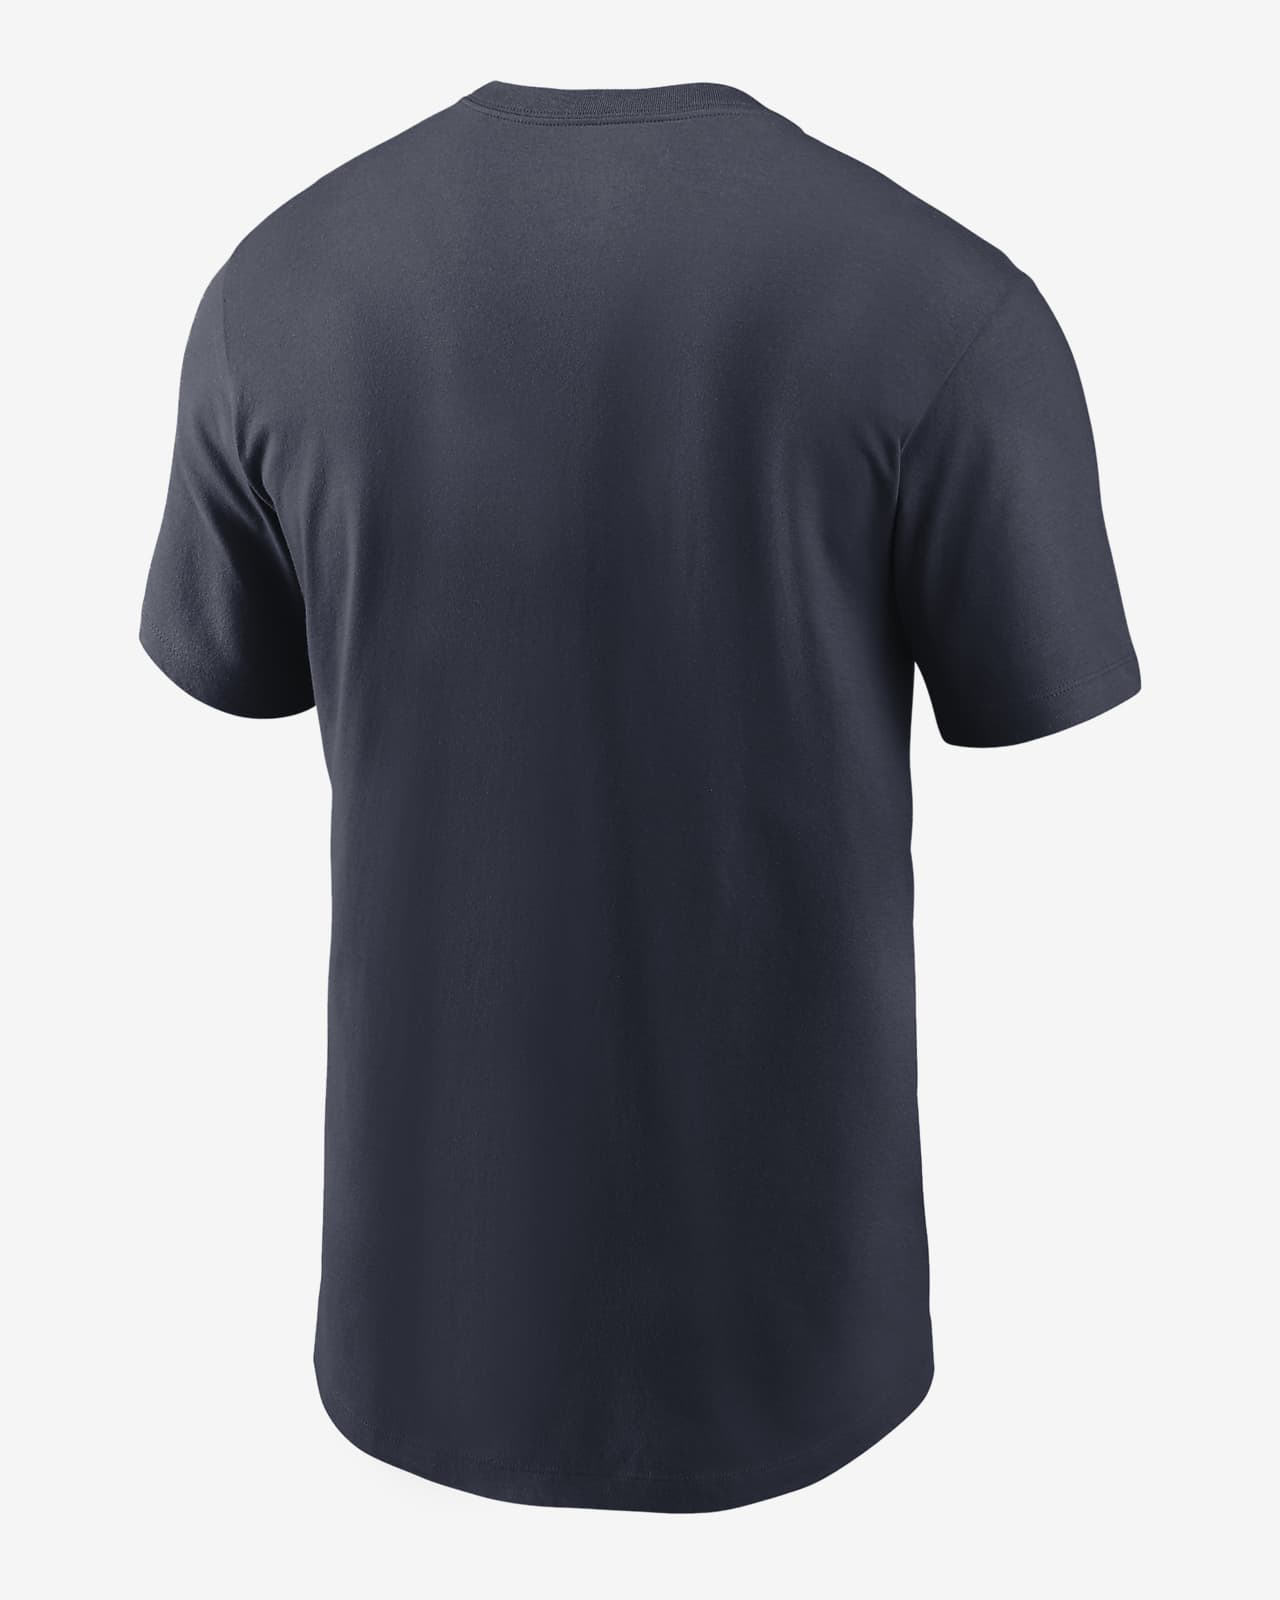 Nike NFL Men's Chicago Bears Primary Logo T-Shirt Large